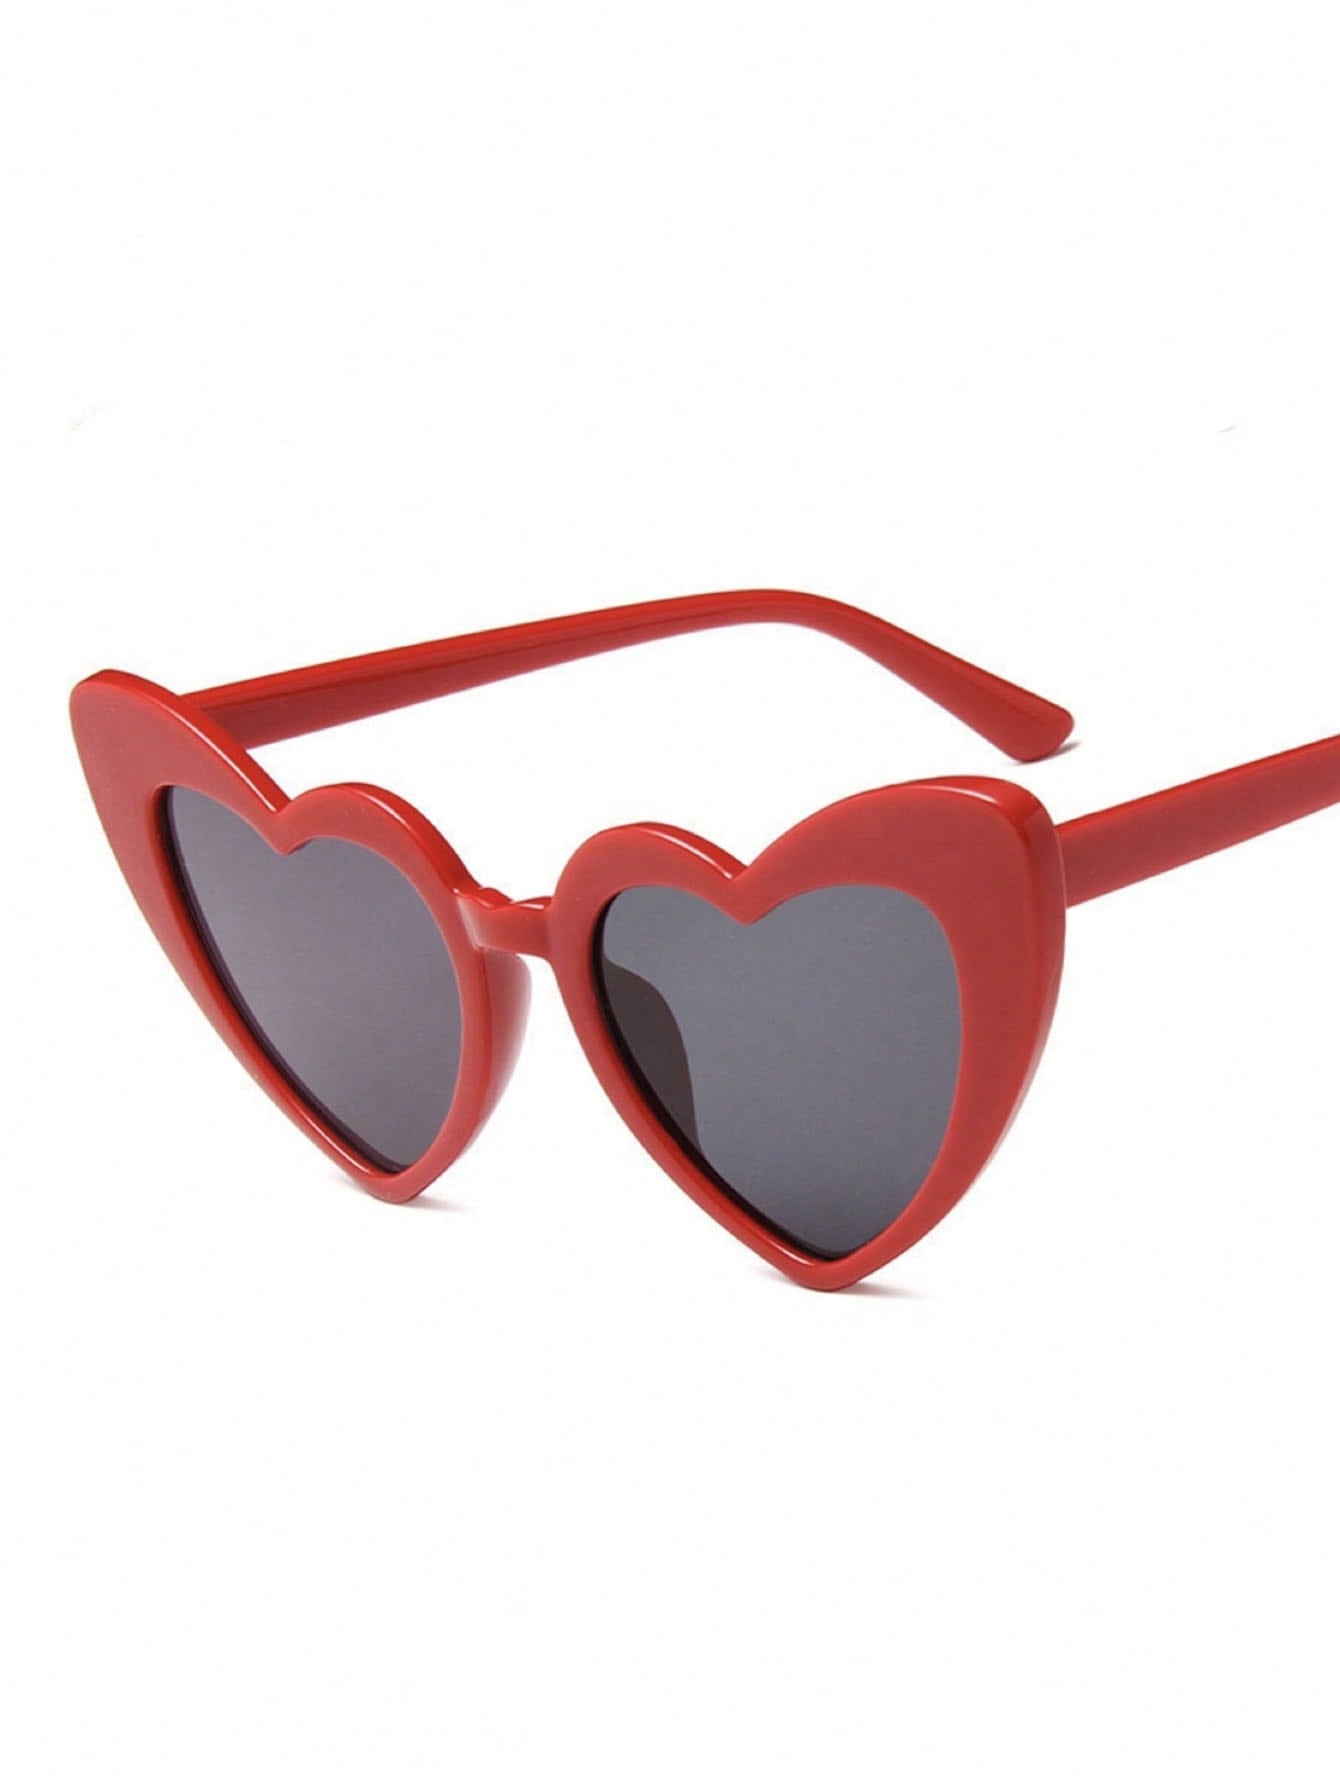 1шт красные модные очки в форме сердца с серыми линзами